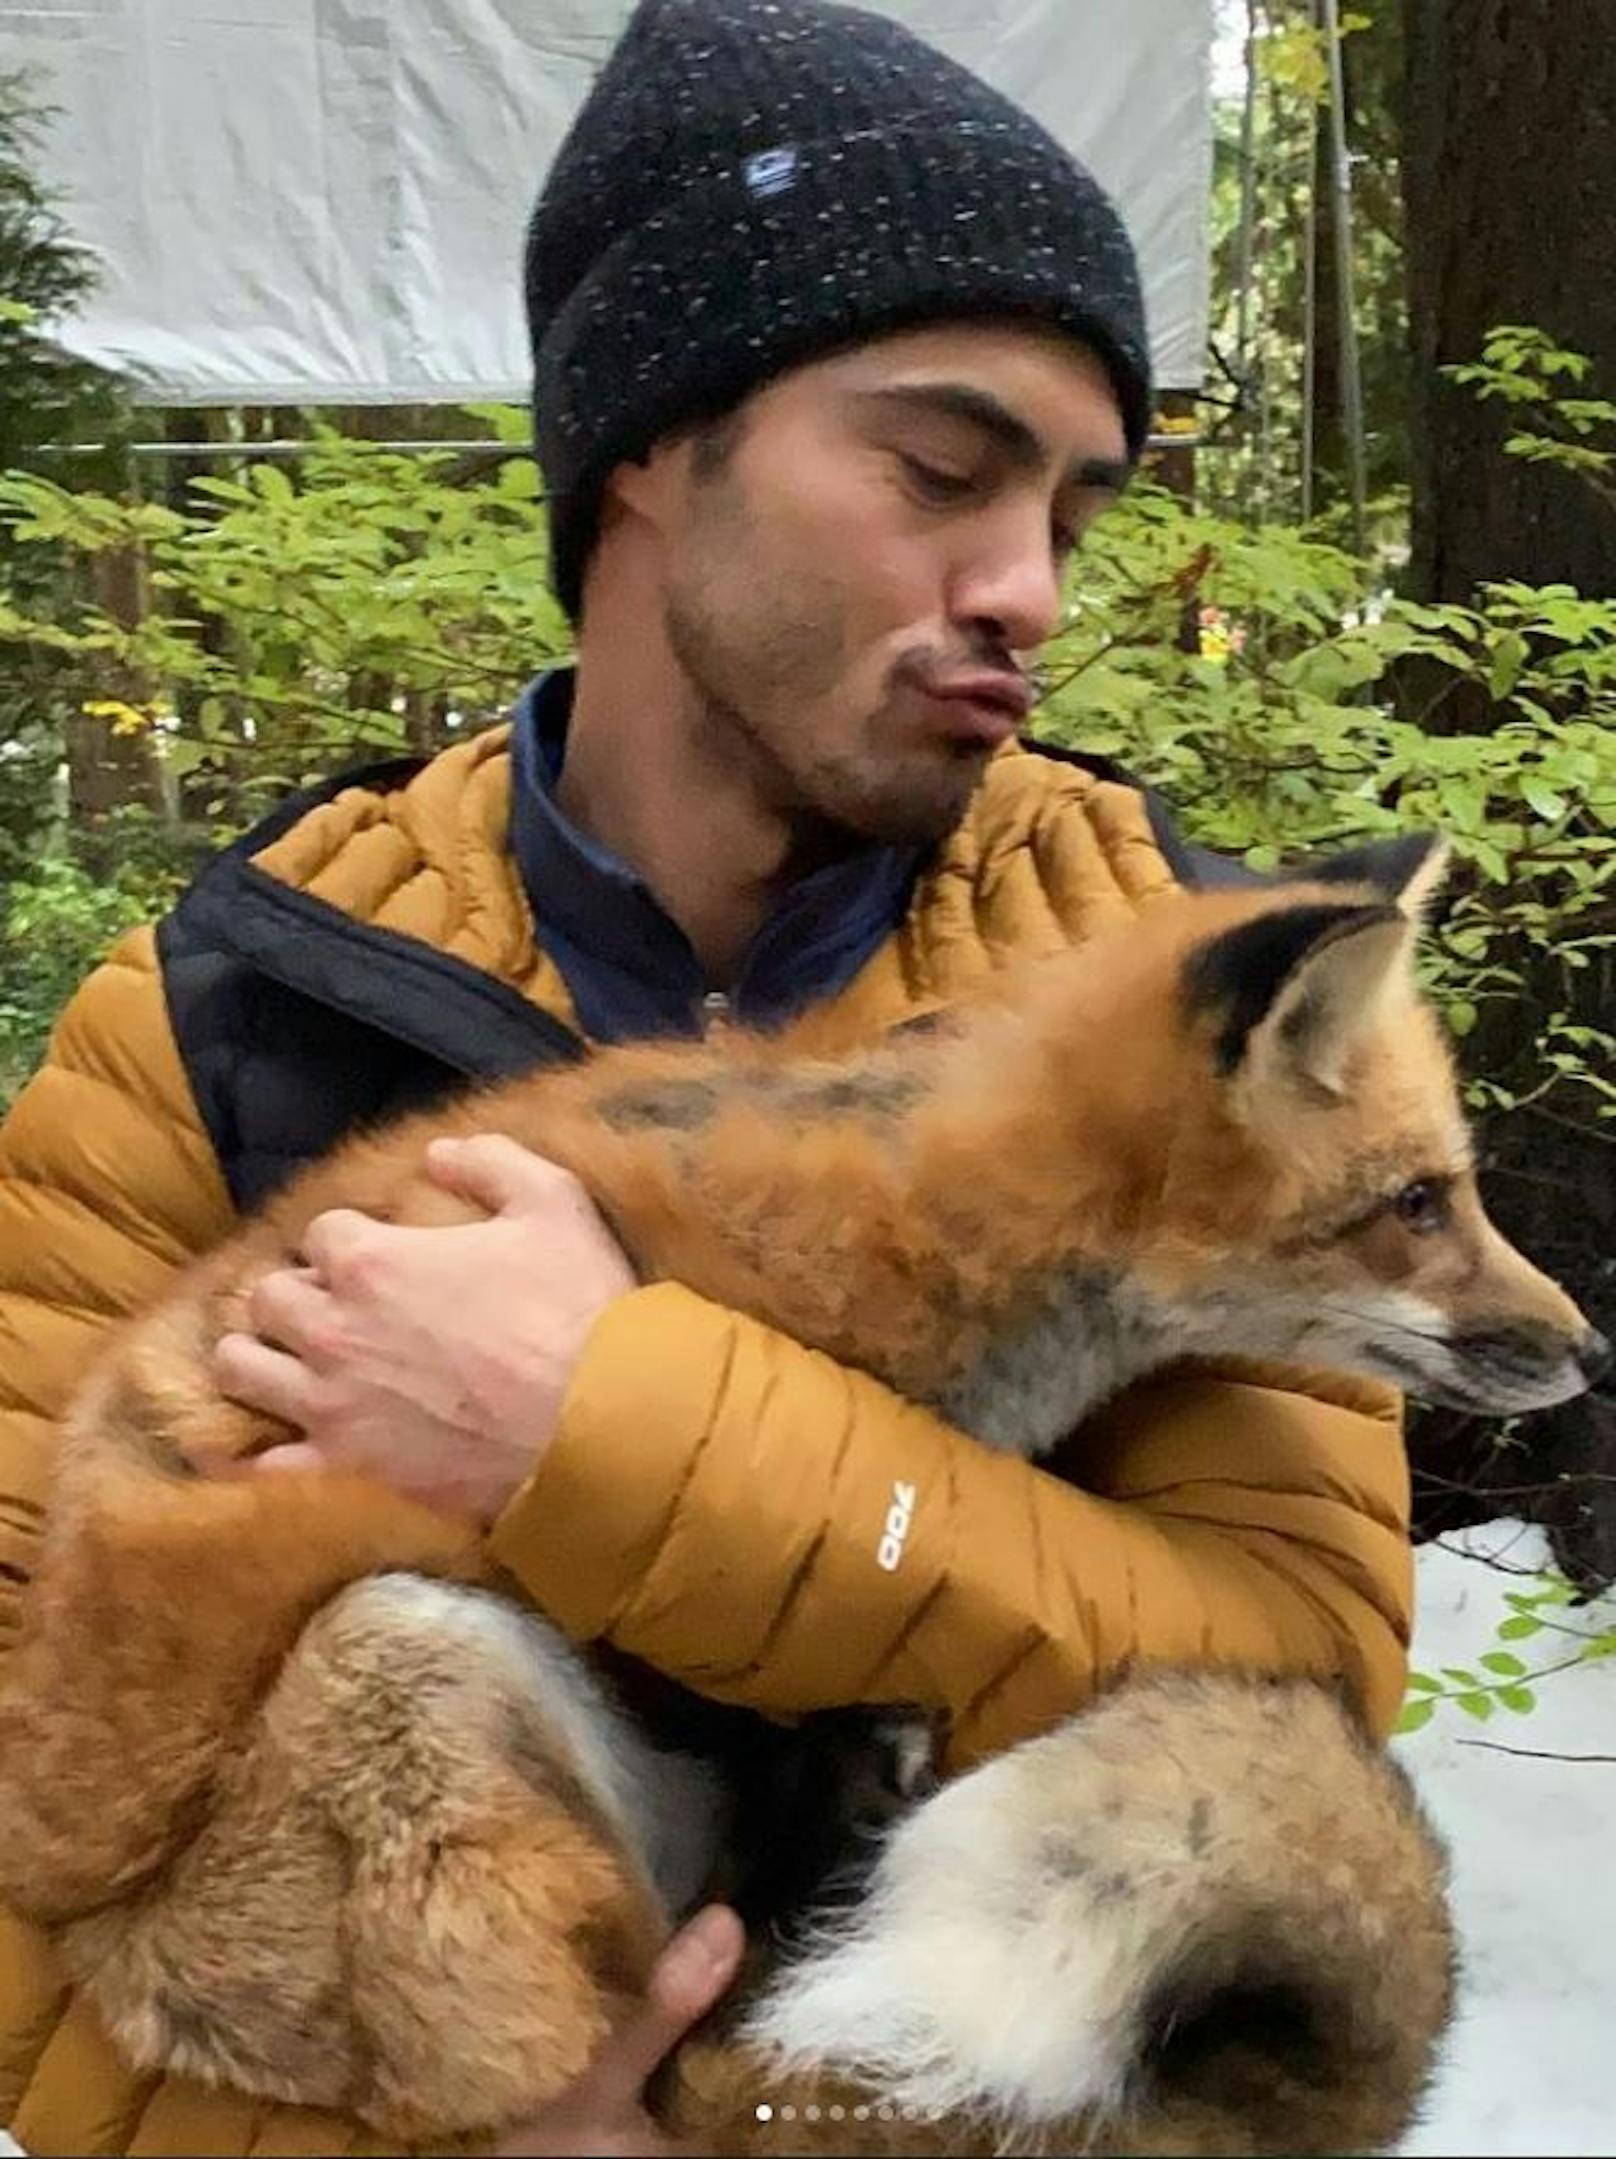 "Wusstest du, dass im Netflix-Film 'Lovehard' eine gelöschte Szene gibt, in der ich einen Fuchs rette? Jetzt weißt du es", schrieb Netflix-Star Darren Barnet zu dem Bild.